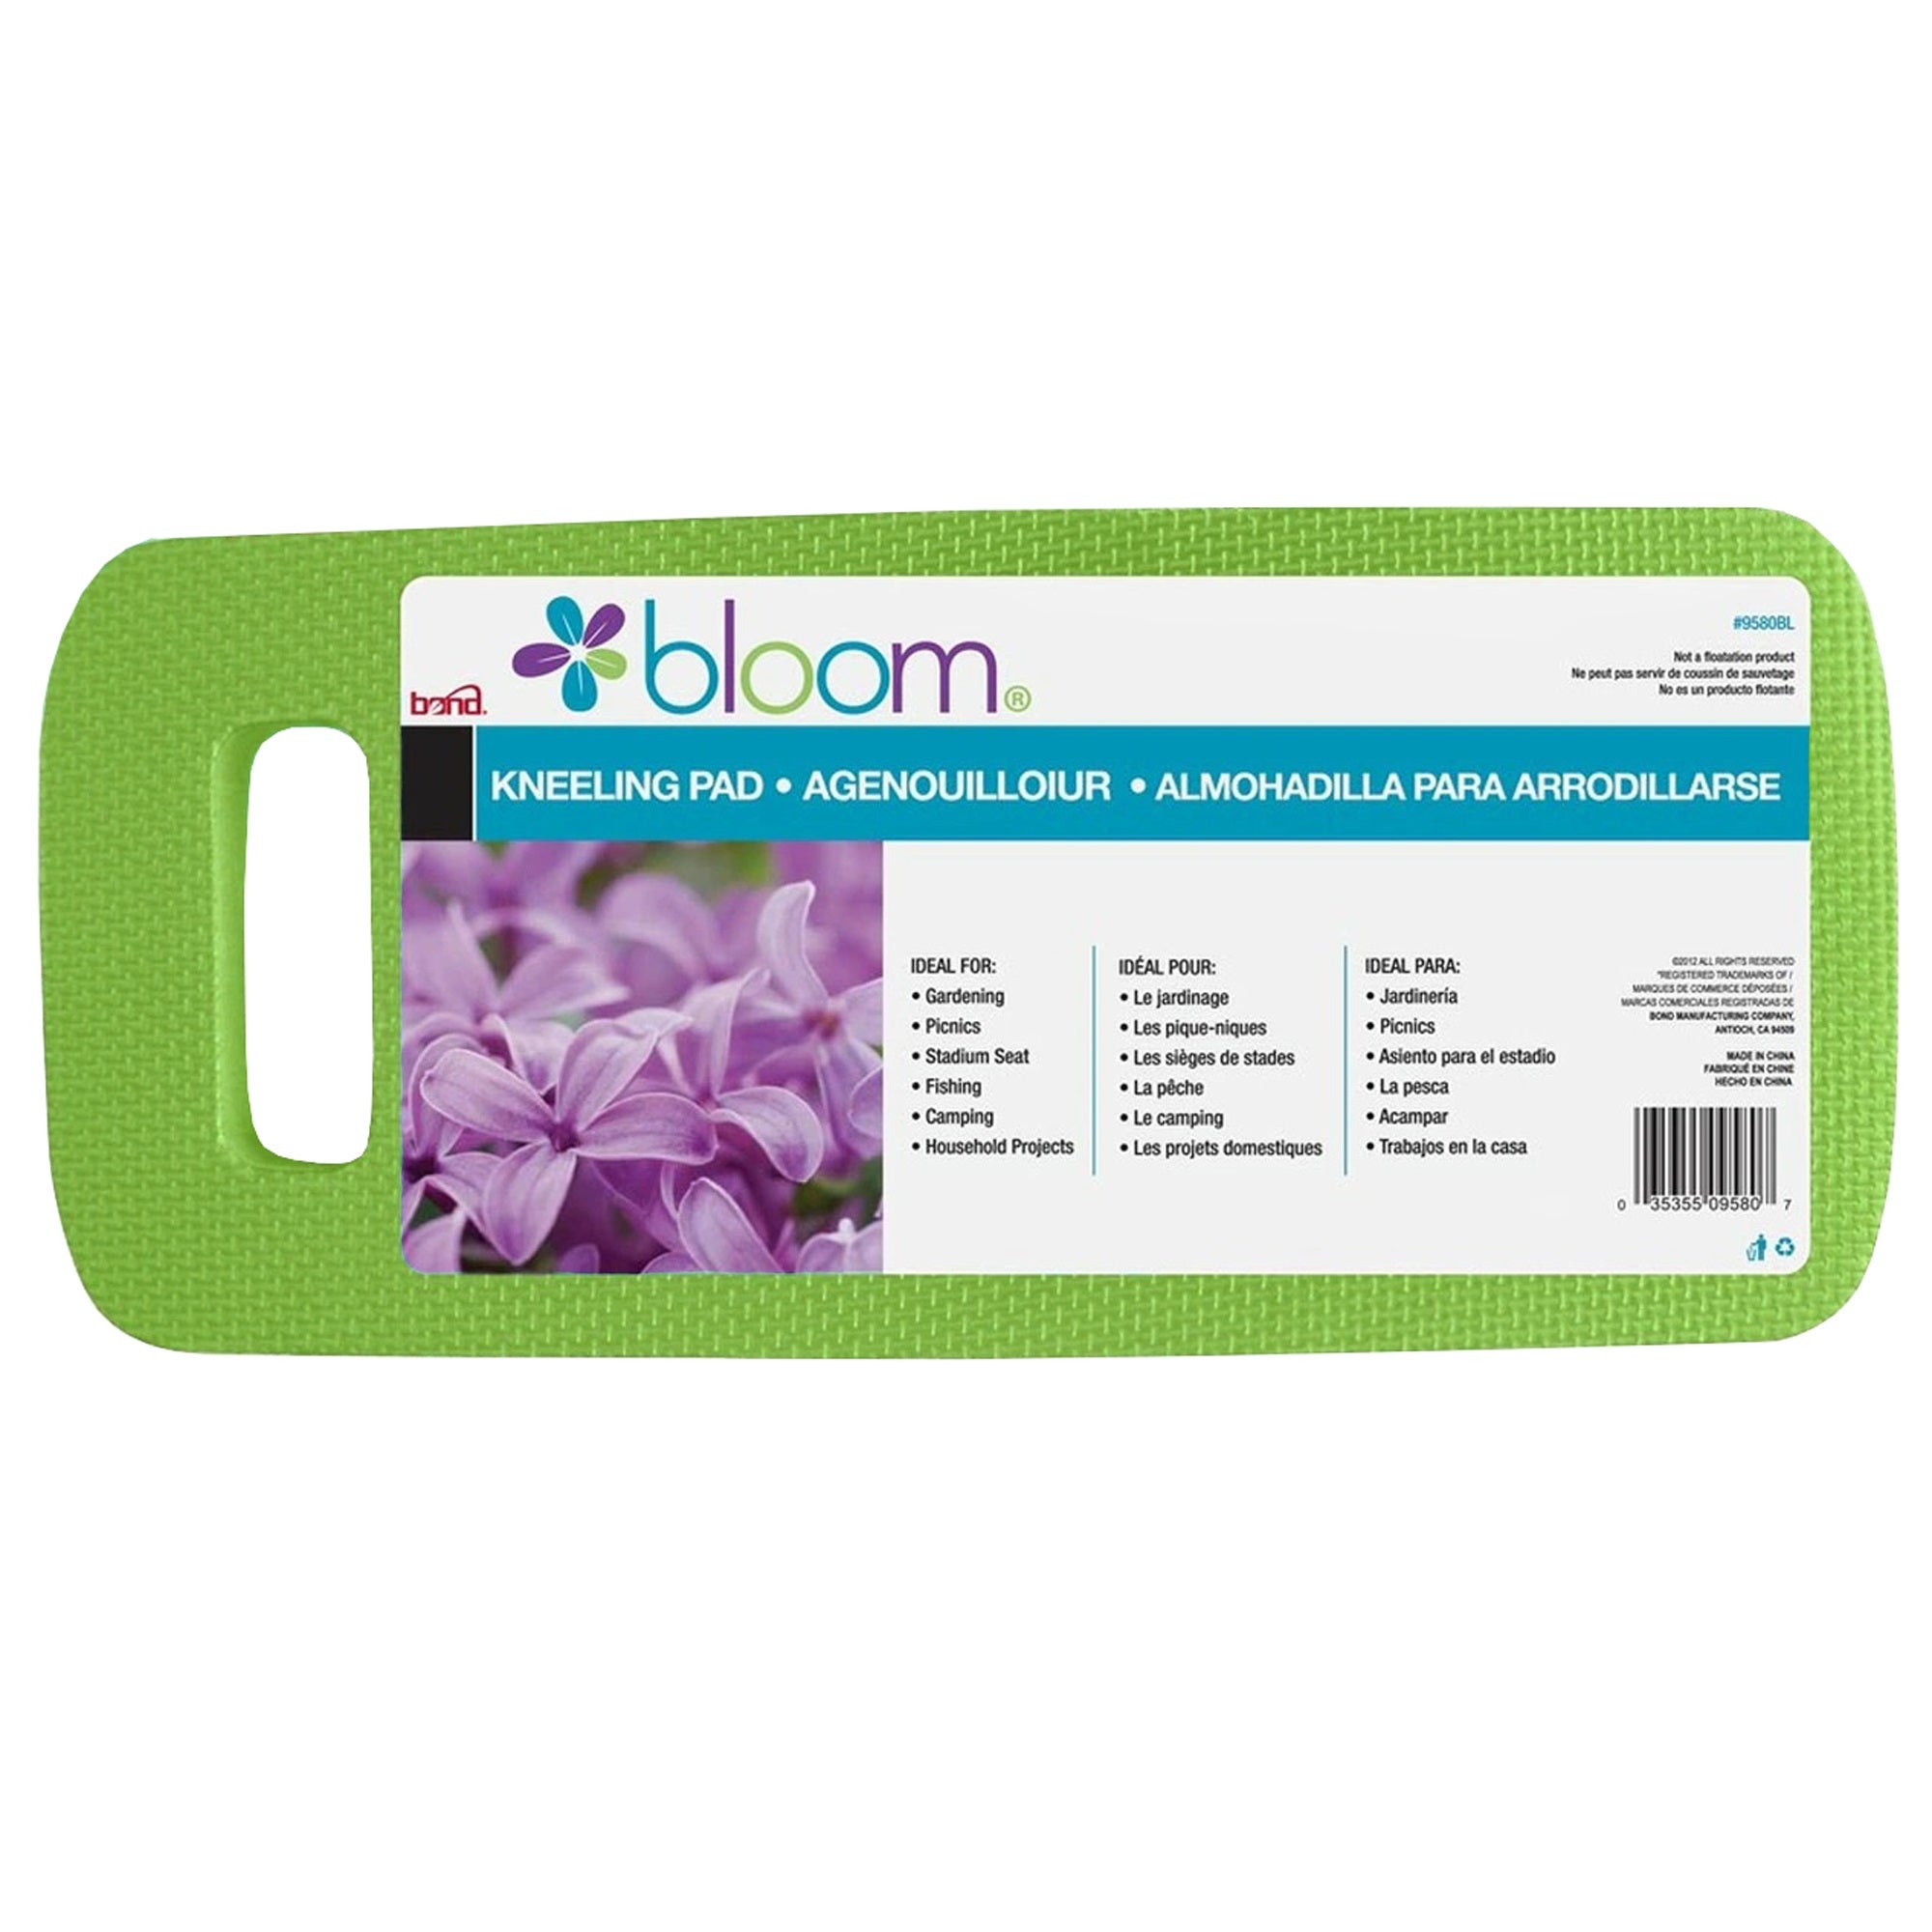 Bloom Garden/Home Kneeling Pad, 7 x 1 x 16", Assorted Colors (Pack of 1)